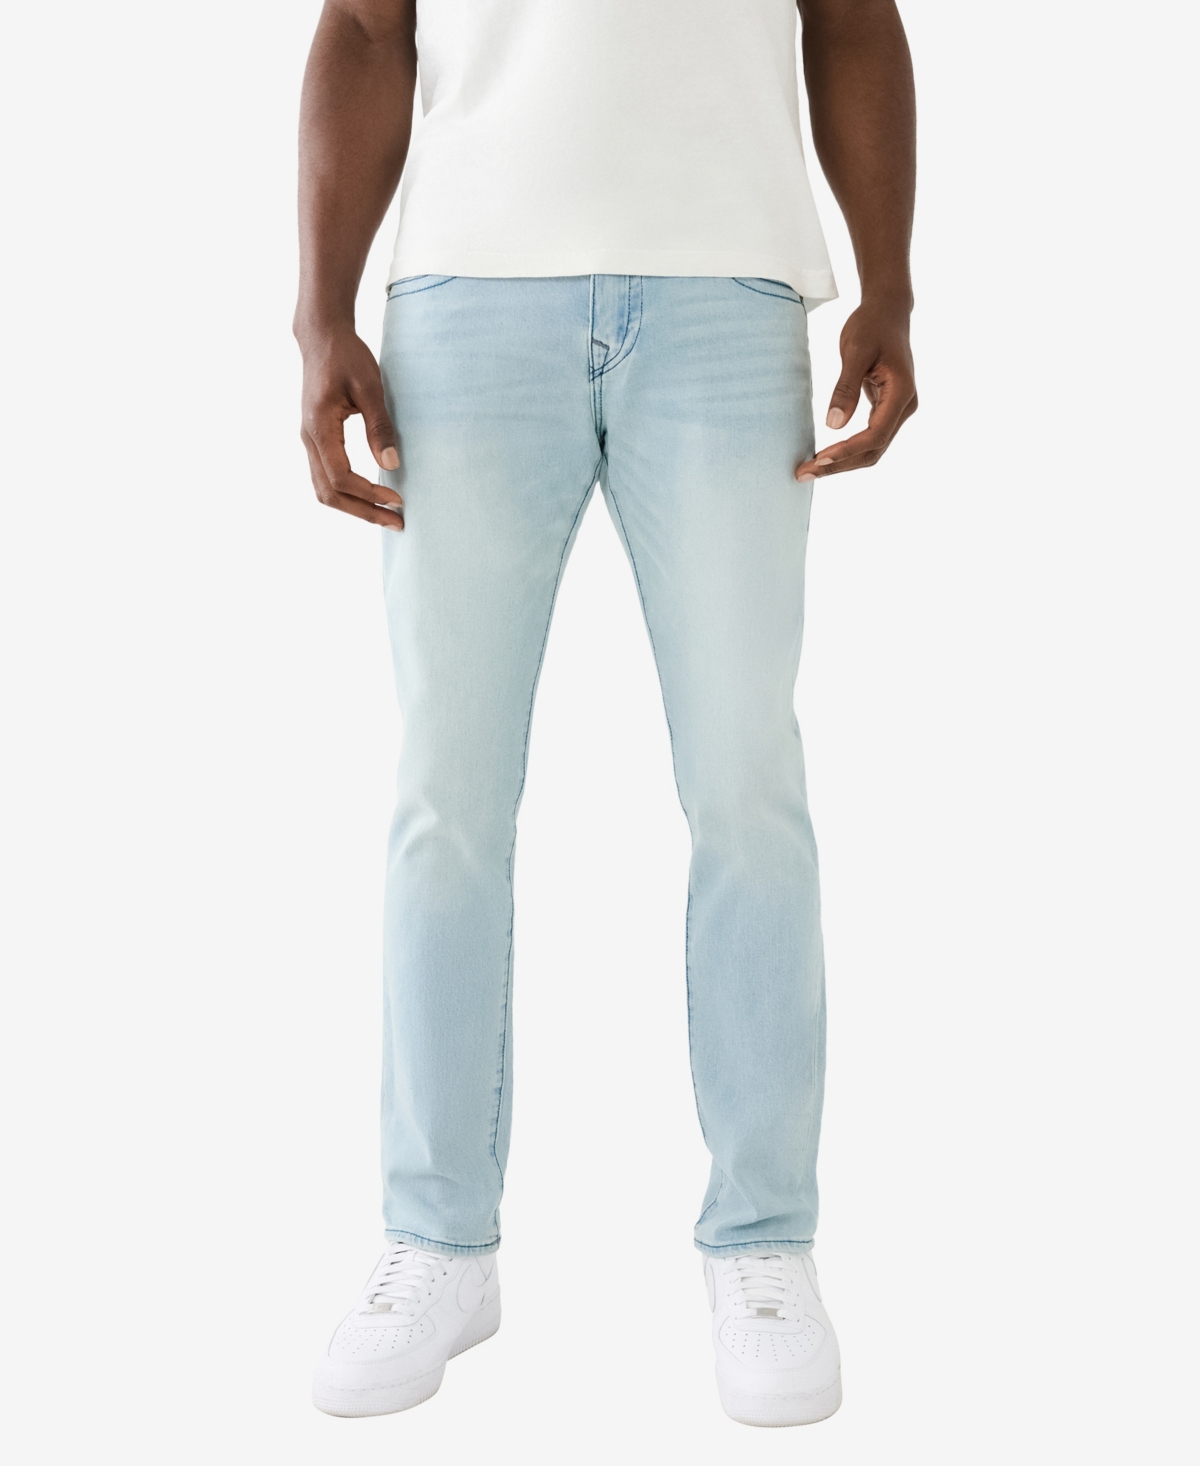 Men's Rocco Skinny Jeans - Dynamism Light Wash